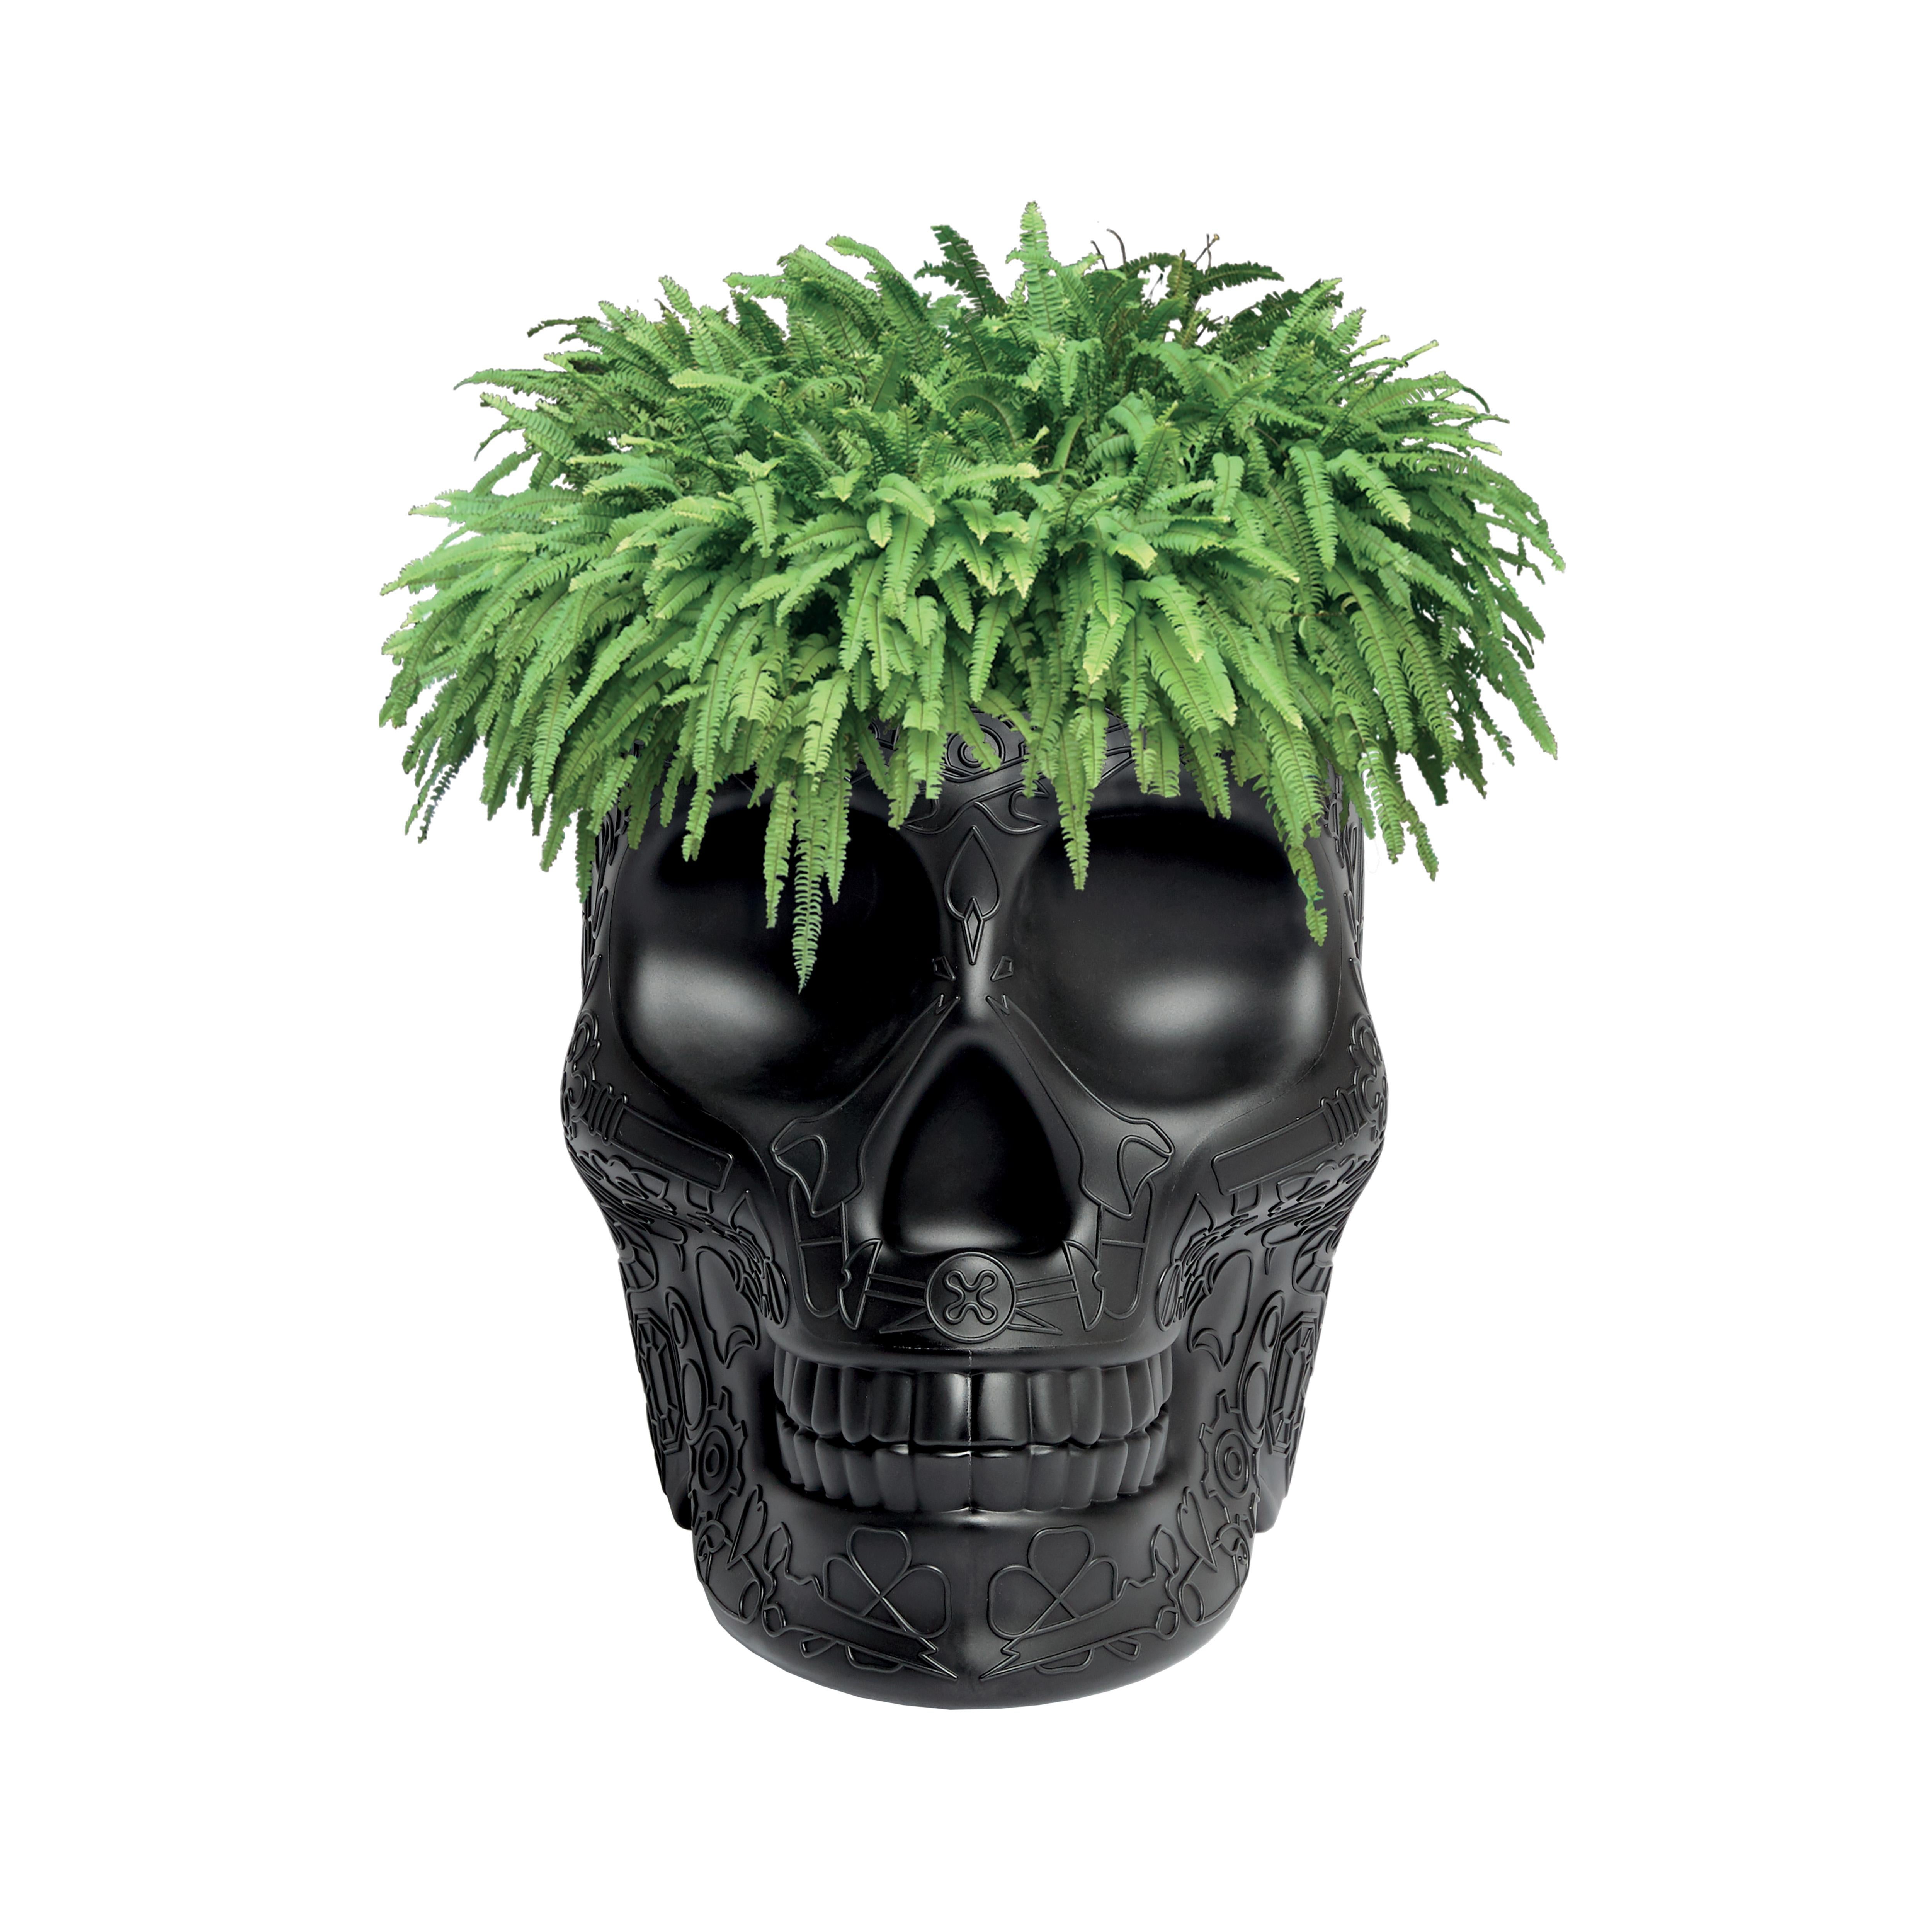 For Sale: Black Modern Skull Terracotta Plastic Planter or Champagne Cooler by Studio Job 2